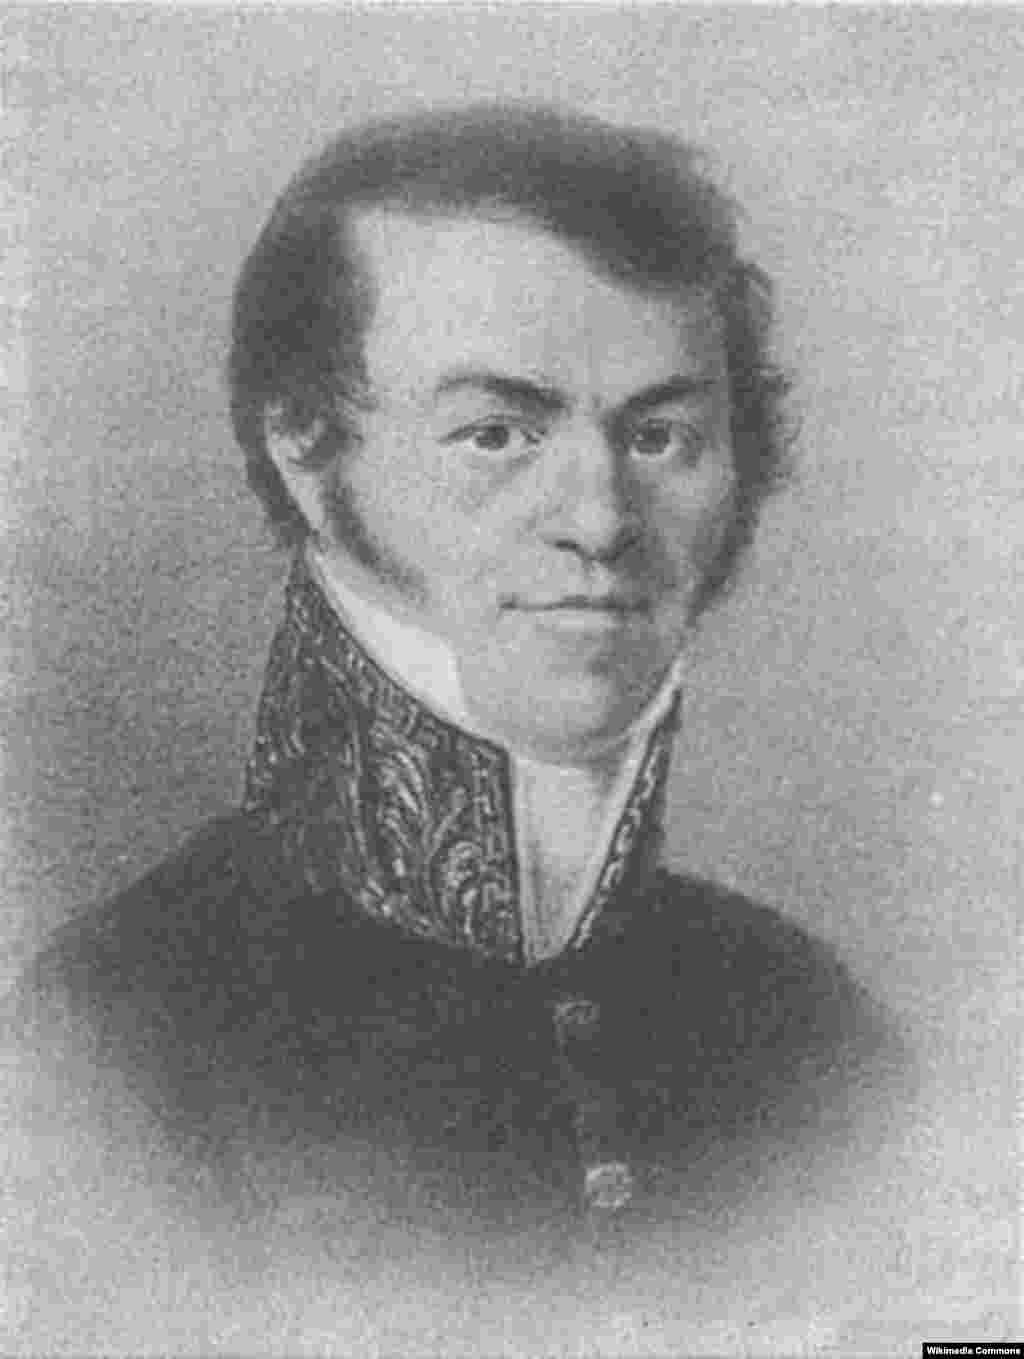 Tatăl lui Dostoievski și-a scris numele în ucraineană, Mykhaylo, înainte de războiul din 1812, în care a servit ca chirurg militar. După aceea, și-a scris numele ca în rusă, Mihail. Familia sa își are rădăcinile în regiunea Pinsk din Belarusul de astăzi. &nbsp;